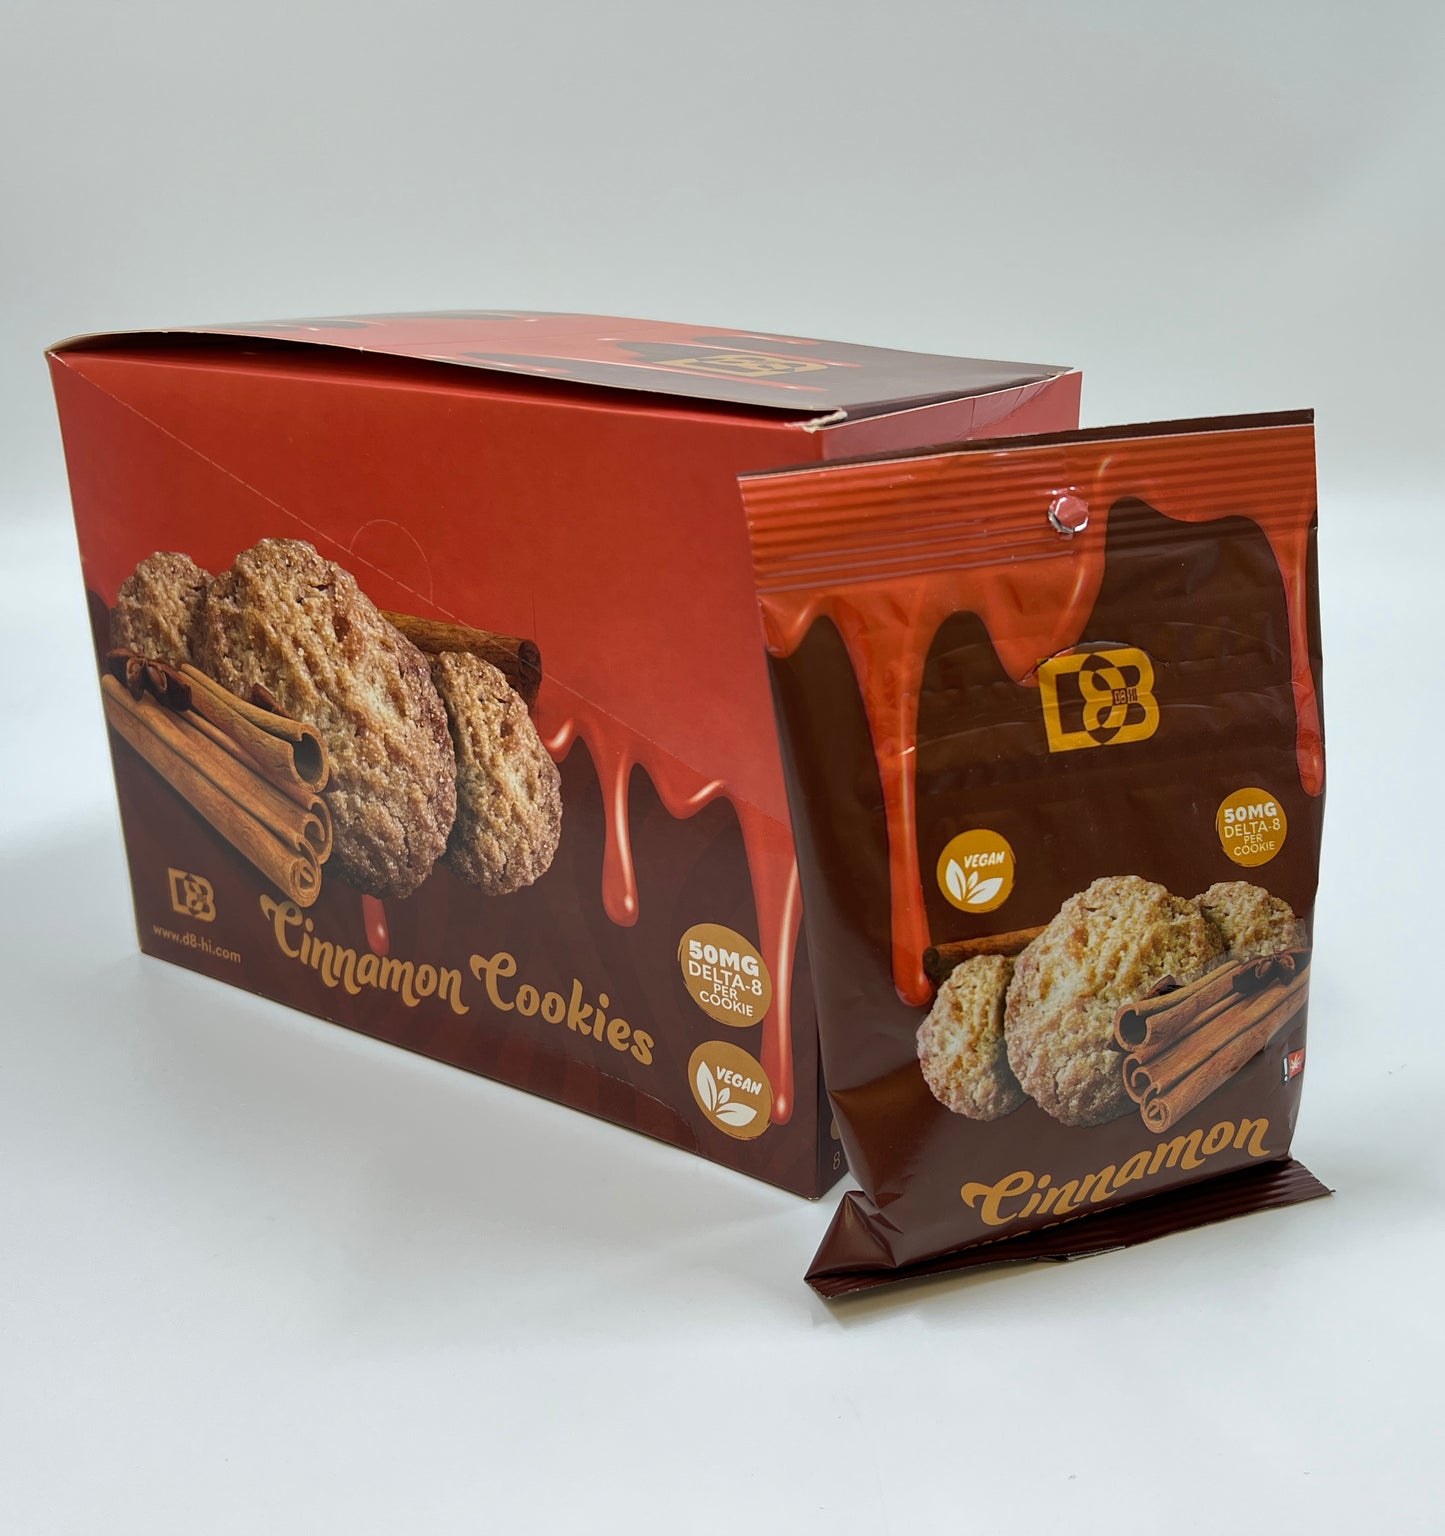 D8-Hi Delta 8 Cookies - 500MG Per Bag - *8 Bags Per Display* NEW - Assorted Flavors *NEW*